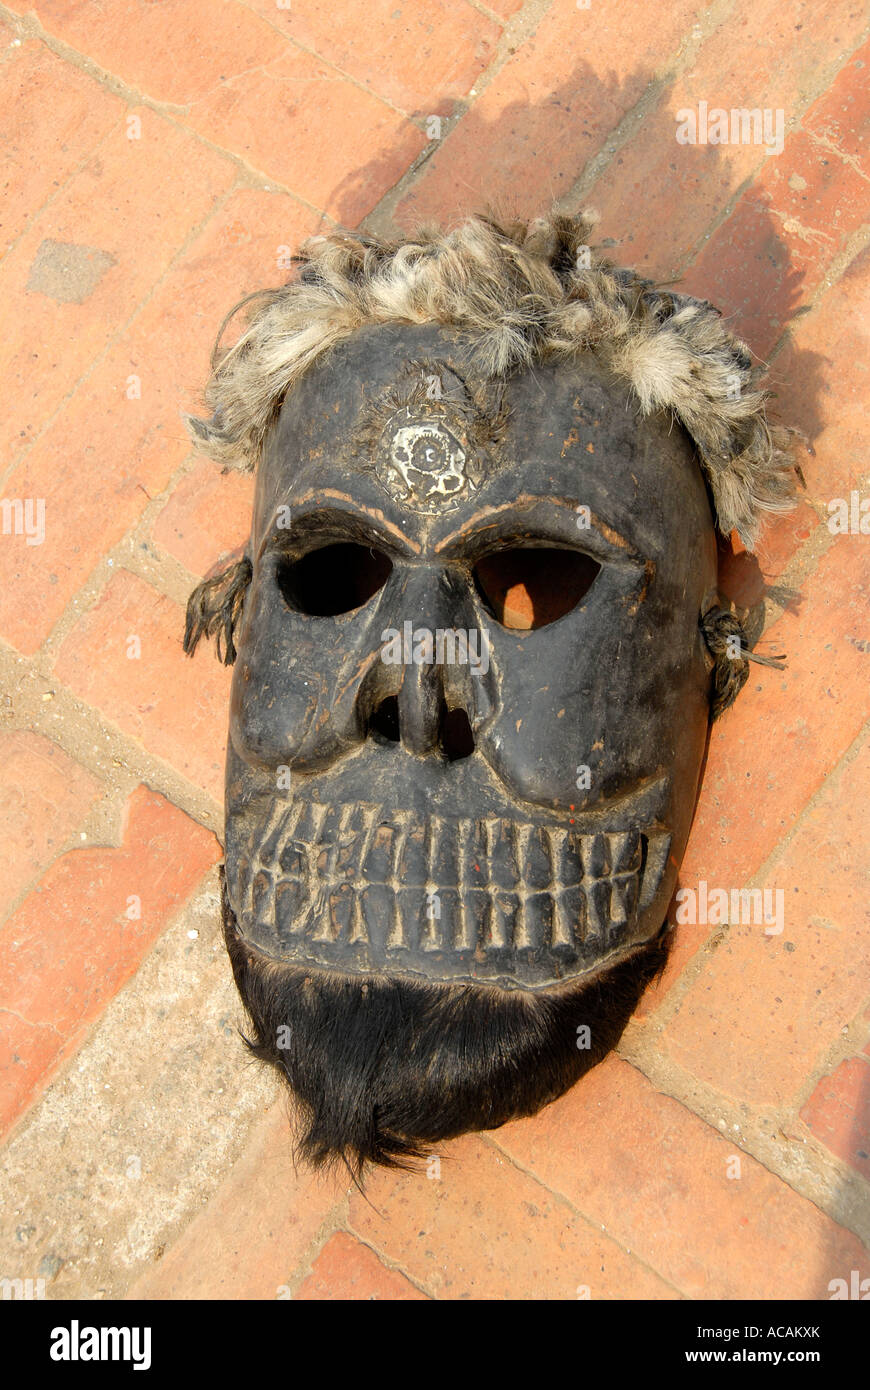 Le bouddhisme tibétain de Katmandou Népal masque affreux Boudnath Banque D'Images